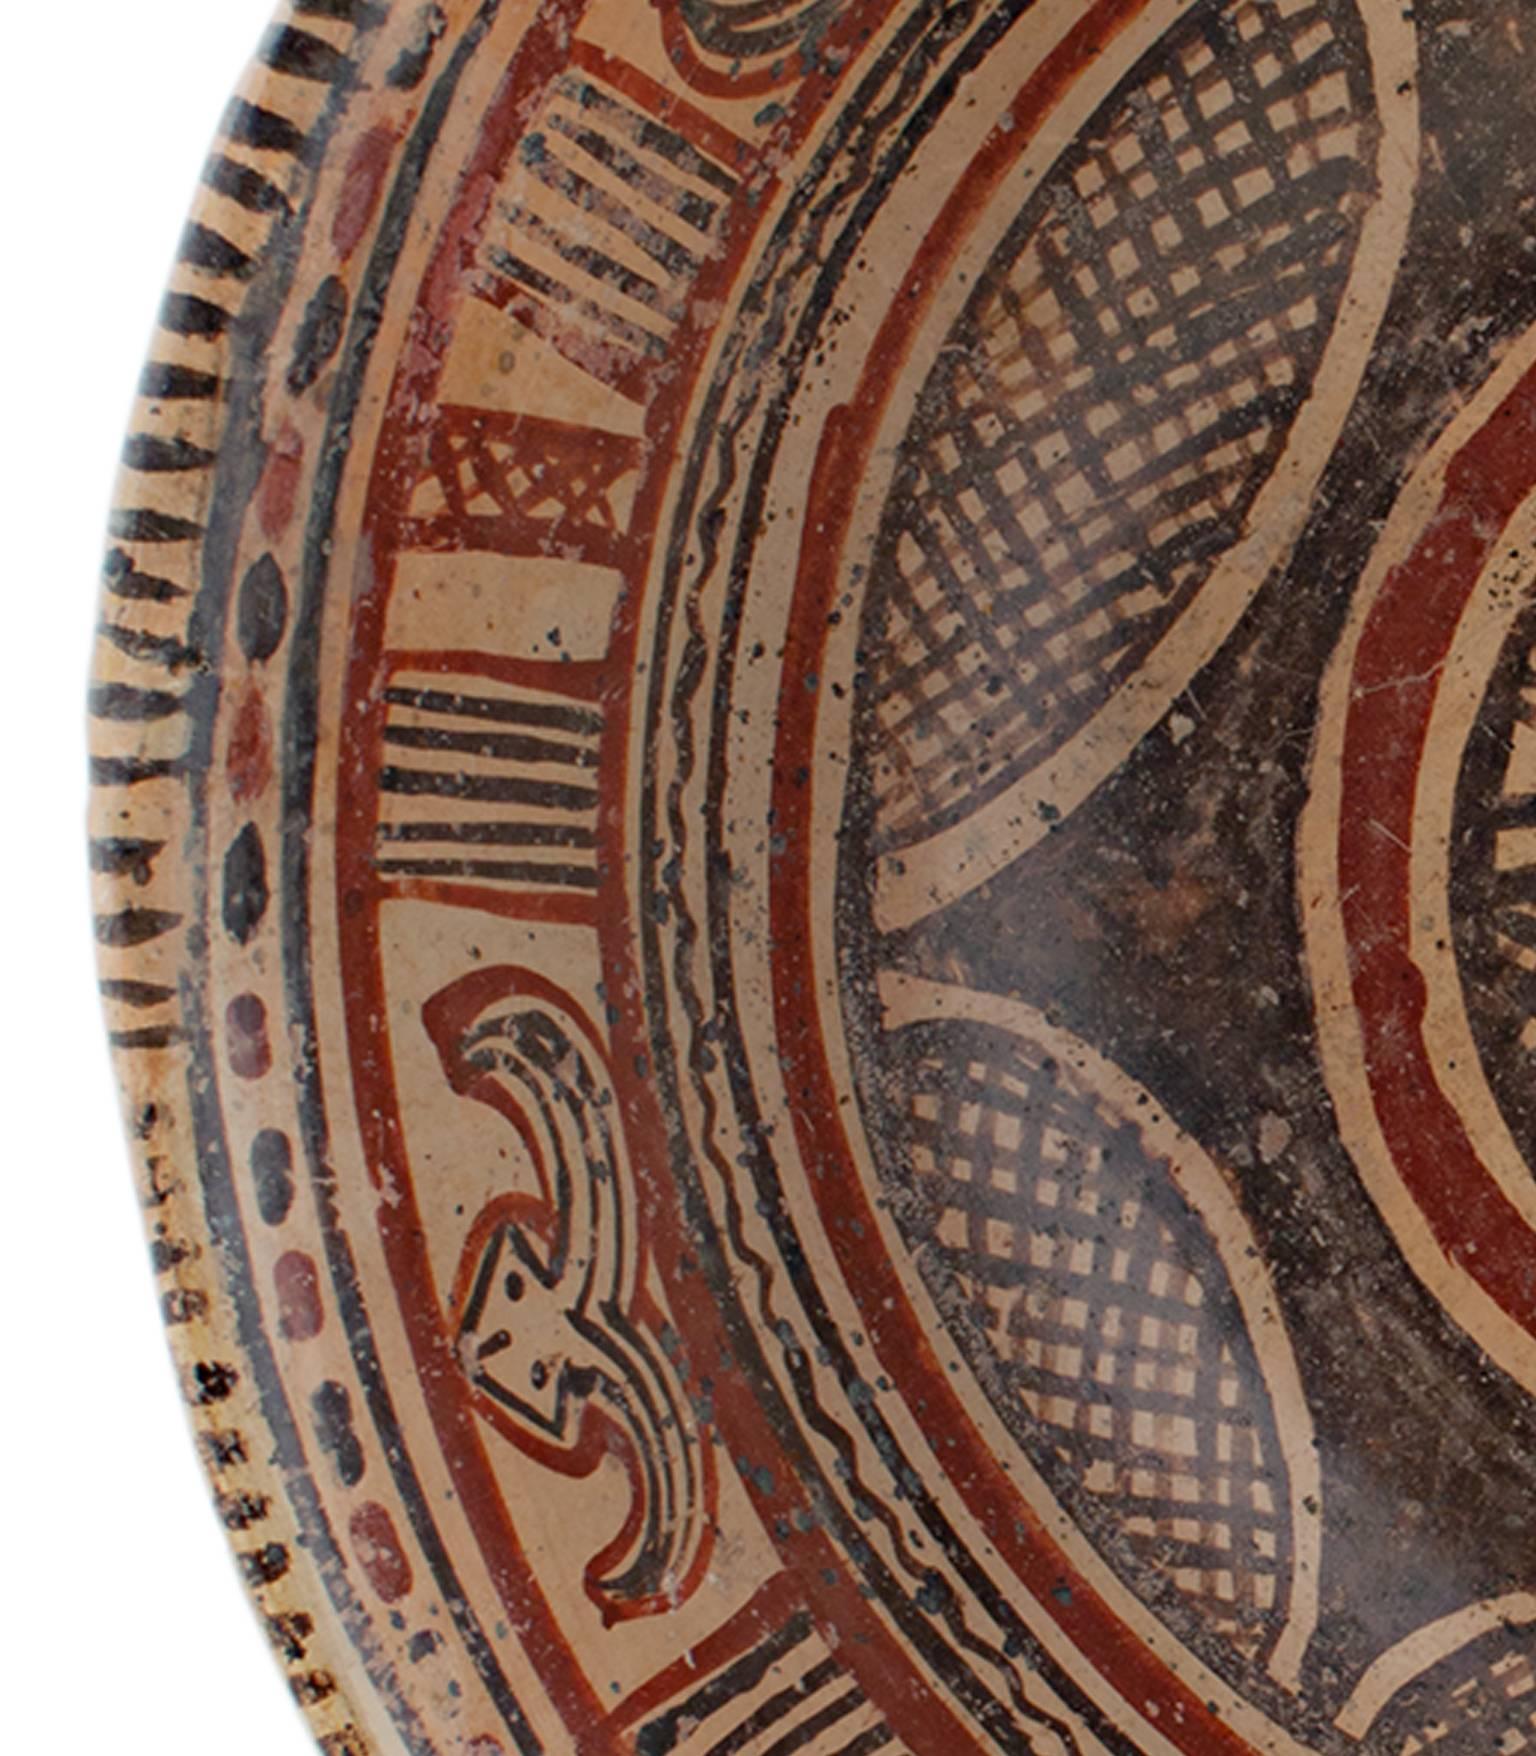 „Prekolumbianische Chinesco-Schale“, glasierte Keramik, um 300 v. Chr. – Sculpture von Unknown